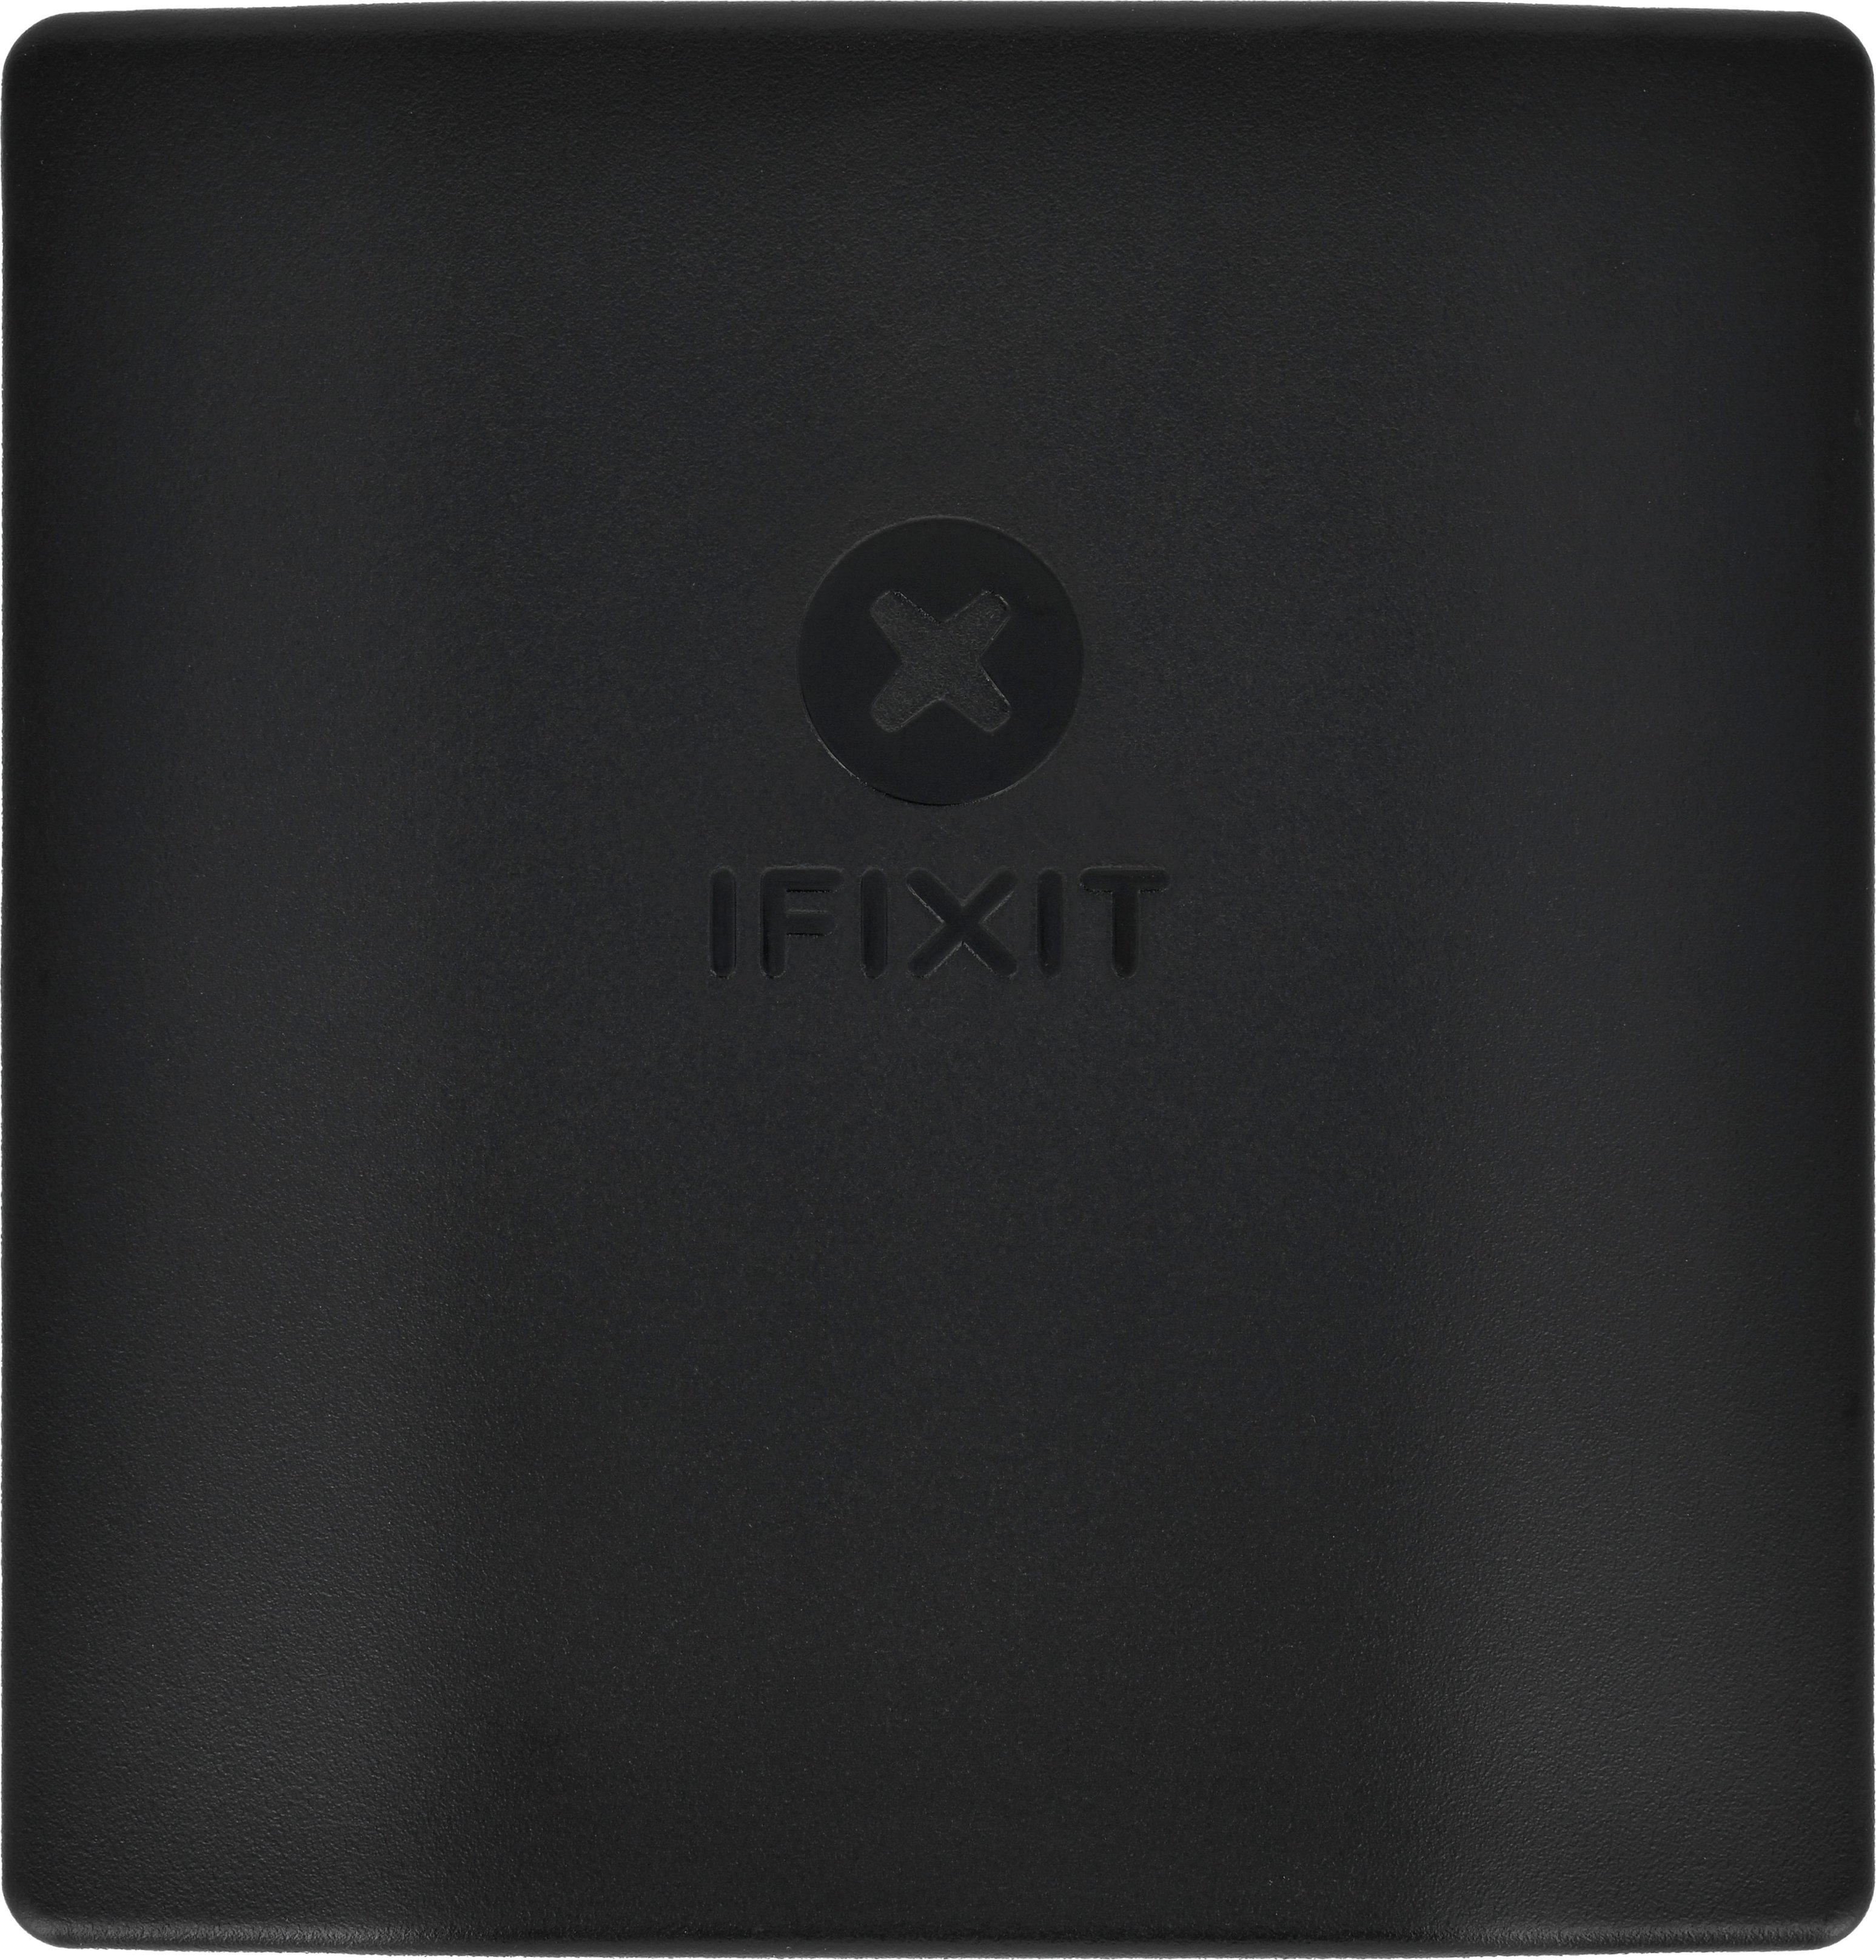 iFixit Pro Tech Toolkit - TOL-15255 - SparkFun Electronics